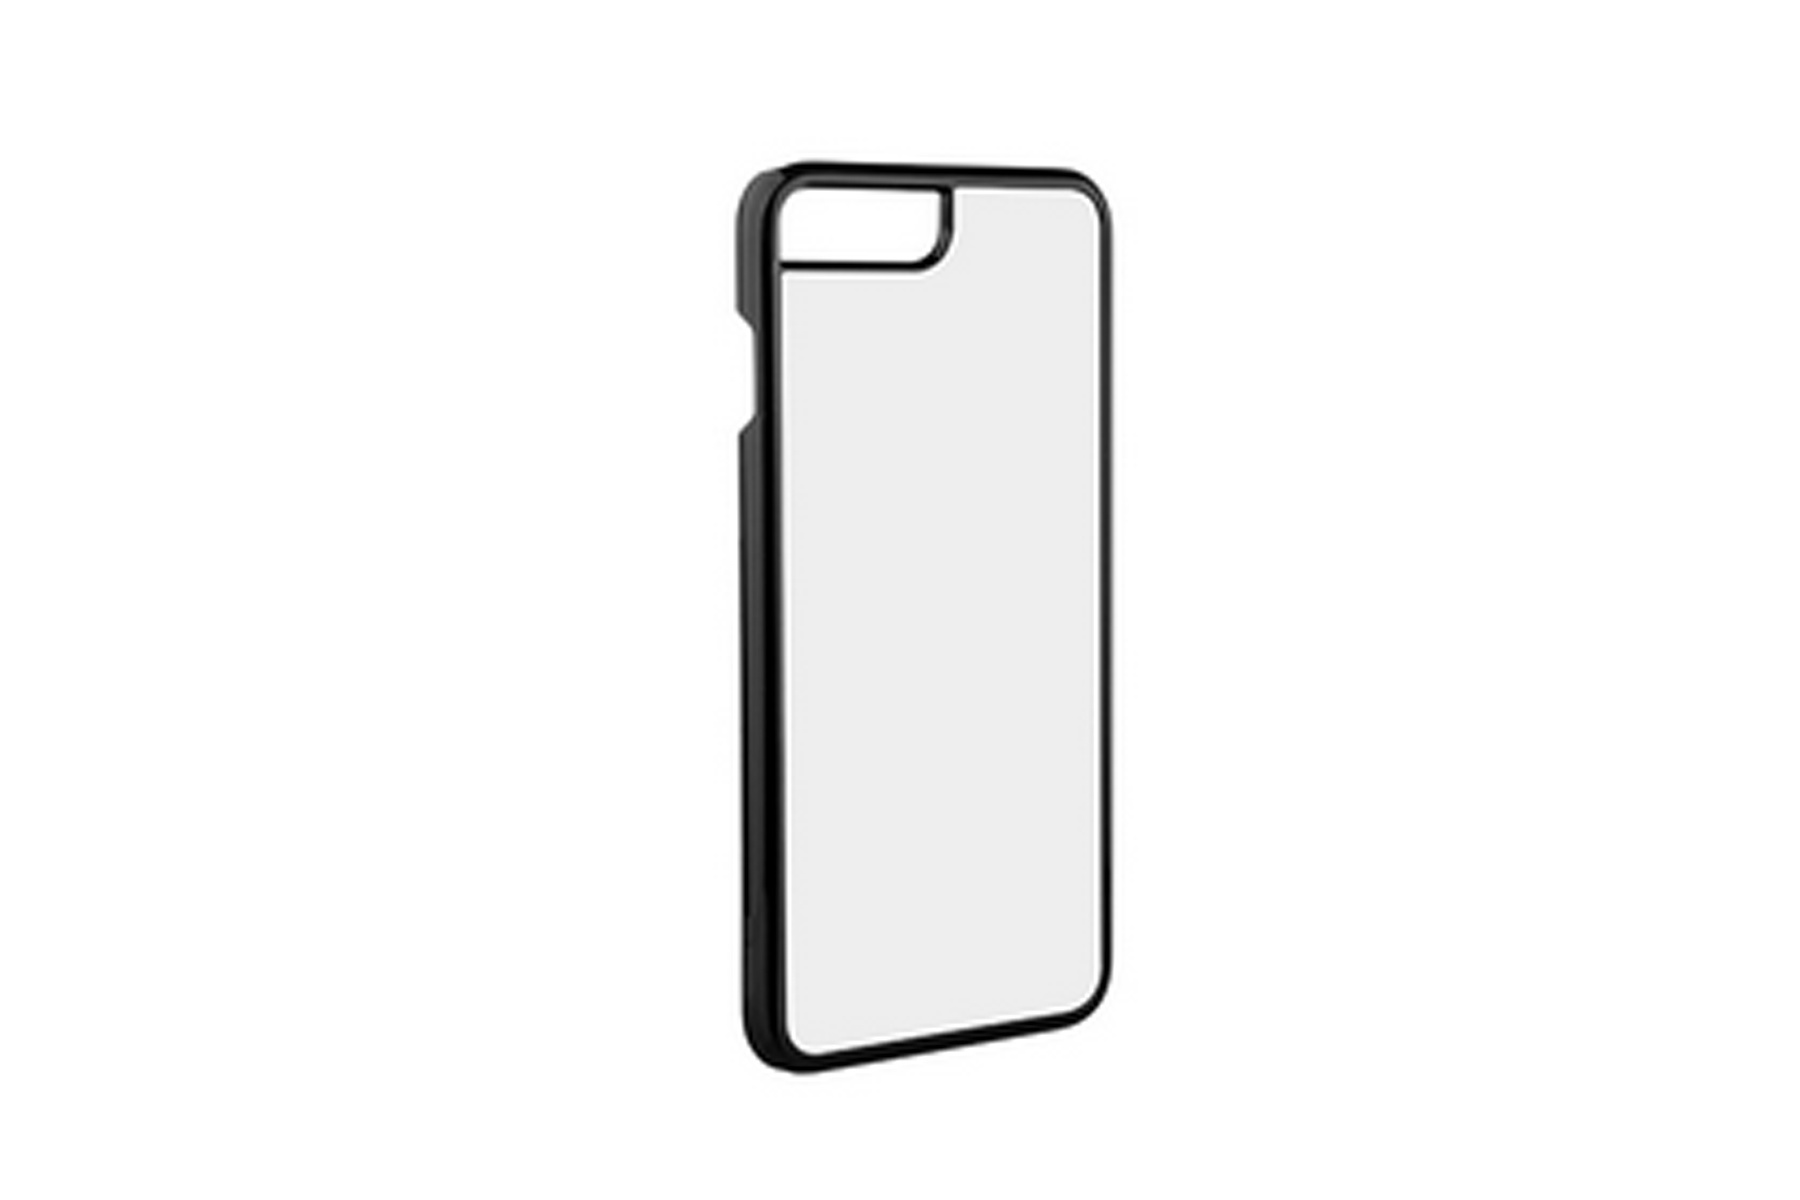 Iphone 7/8 Plus Cover (Plastic, Black)